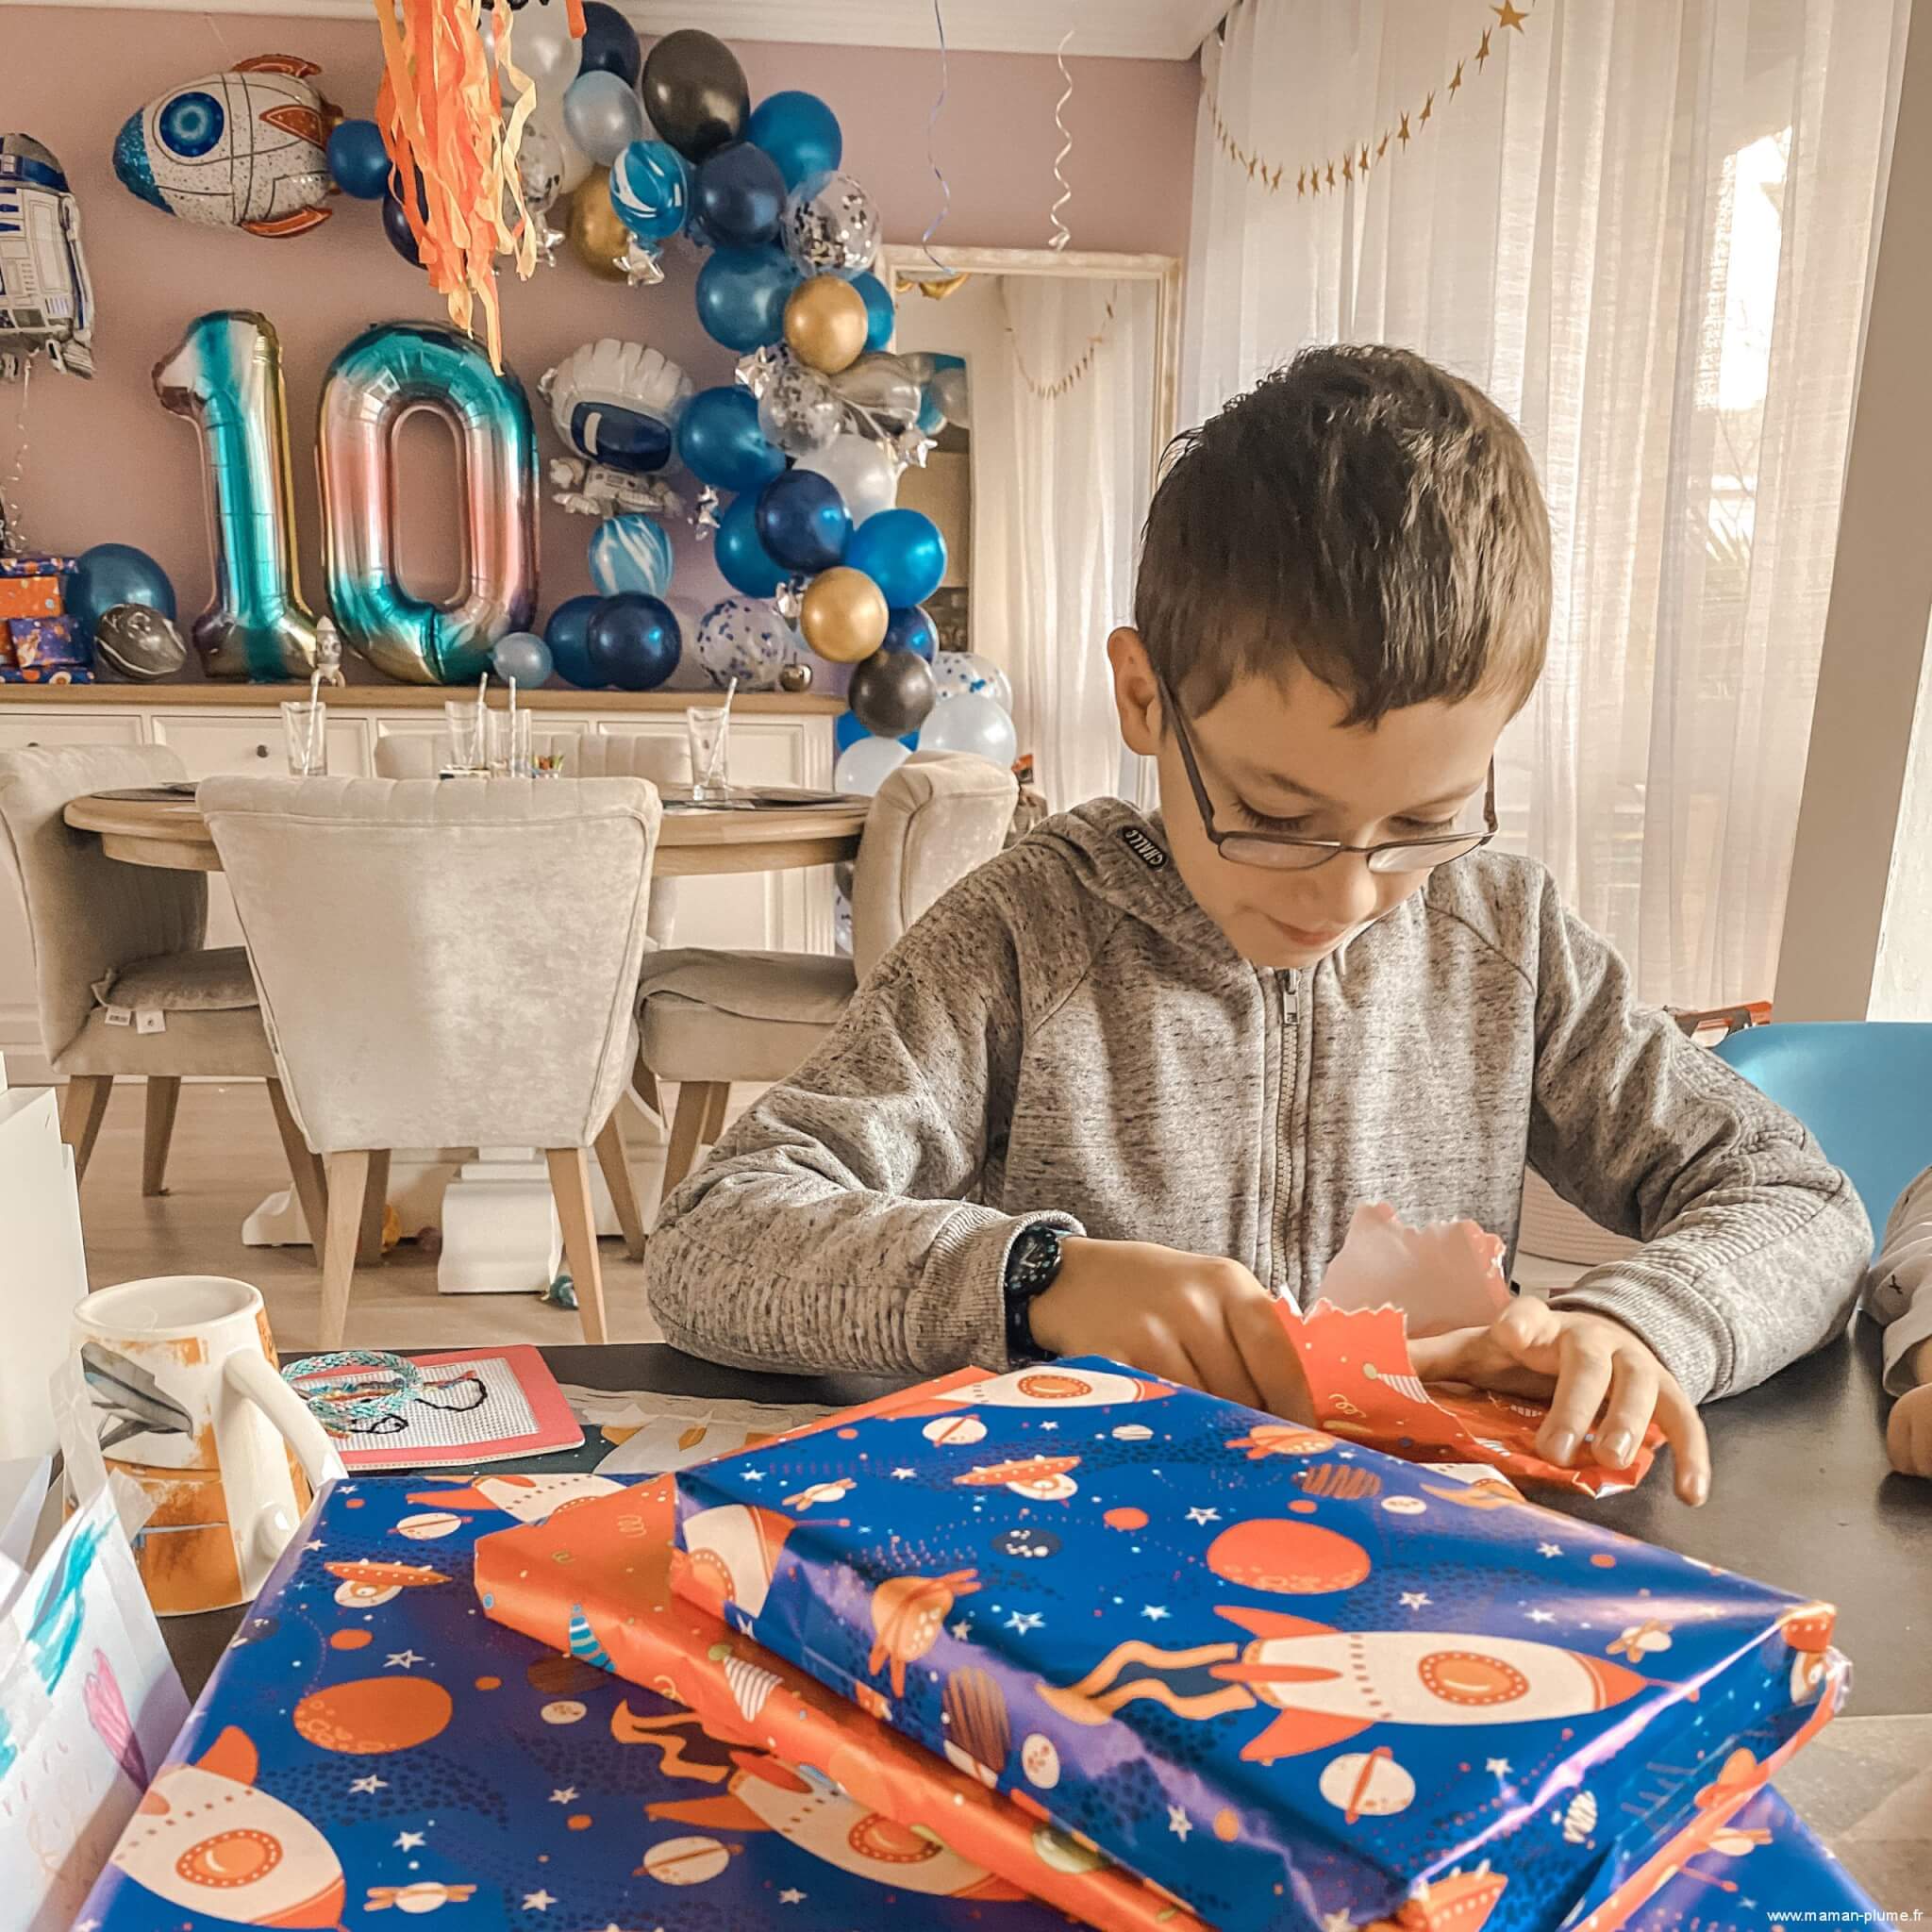 10 idées cadeaux pour enfant de 7 ans